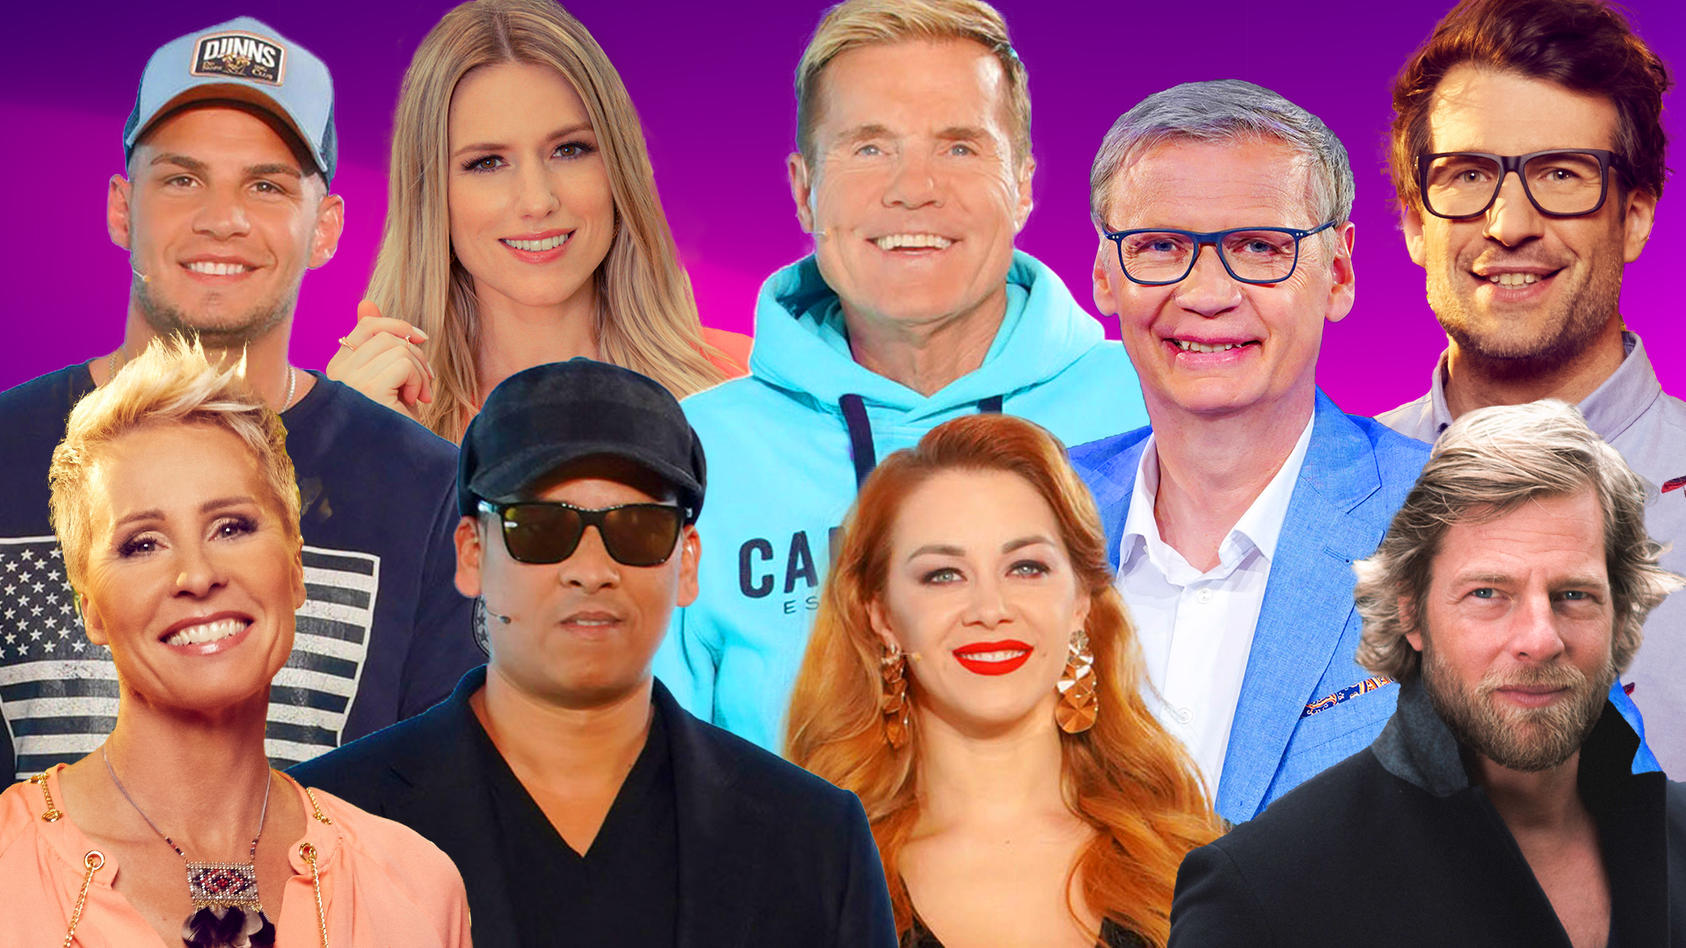 RTL setzt auf neue RealityFormate, starke Persönlichkeiten & TopMarken